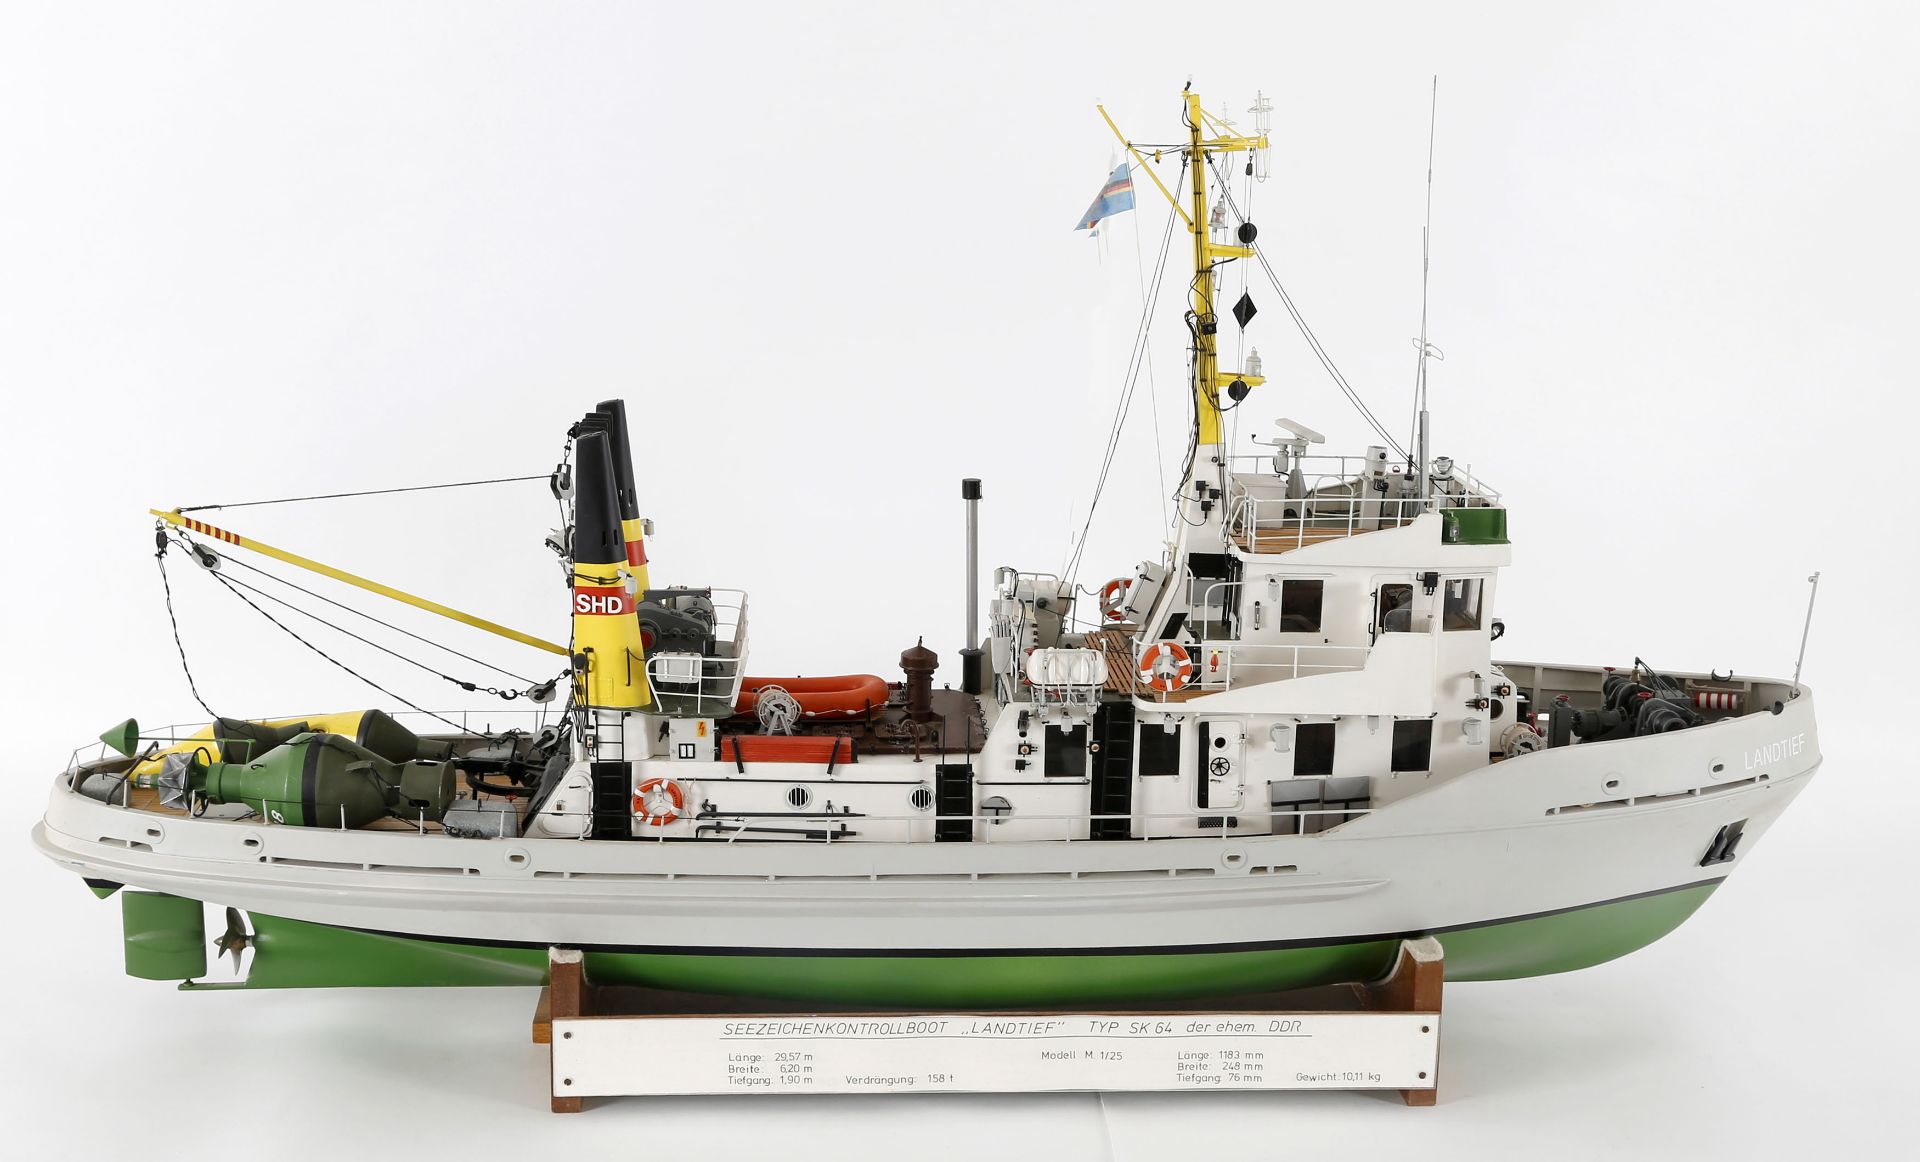 Modell des Seezeichenkontrollbootes 'Landtief' (SK64) - Image 7 of 7